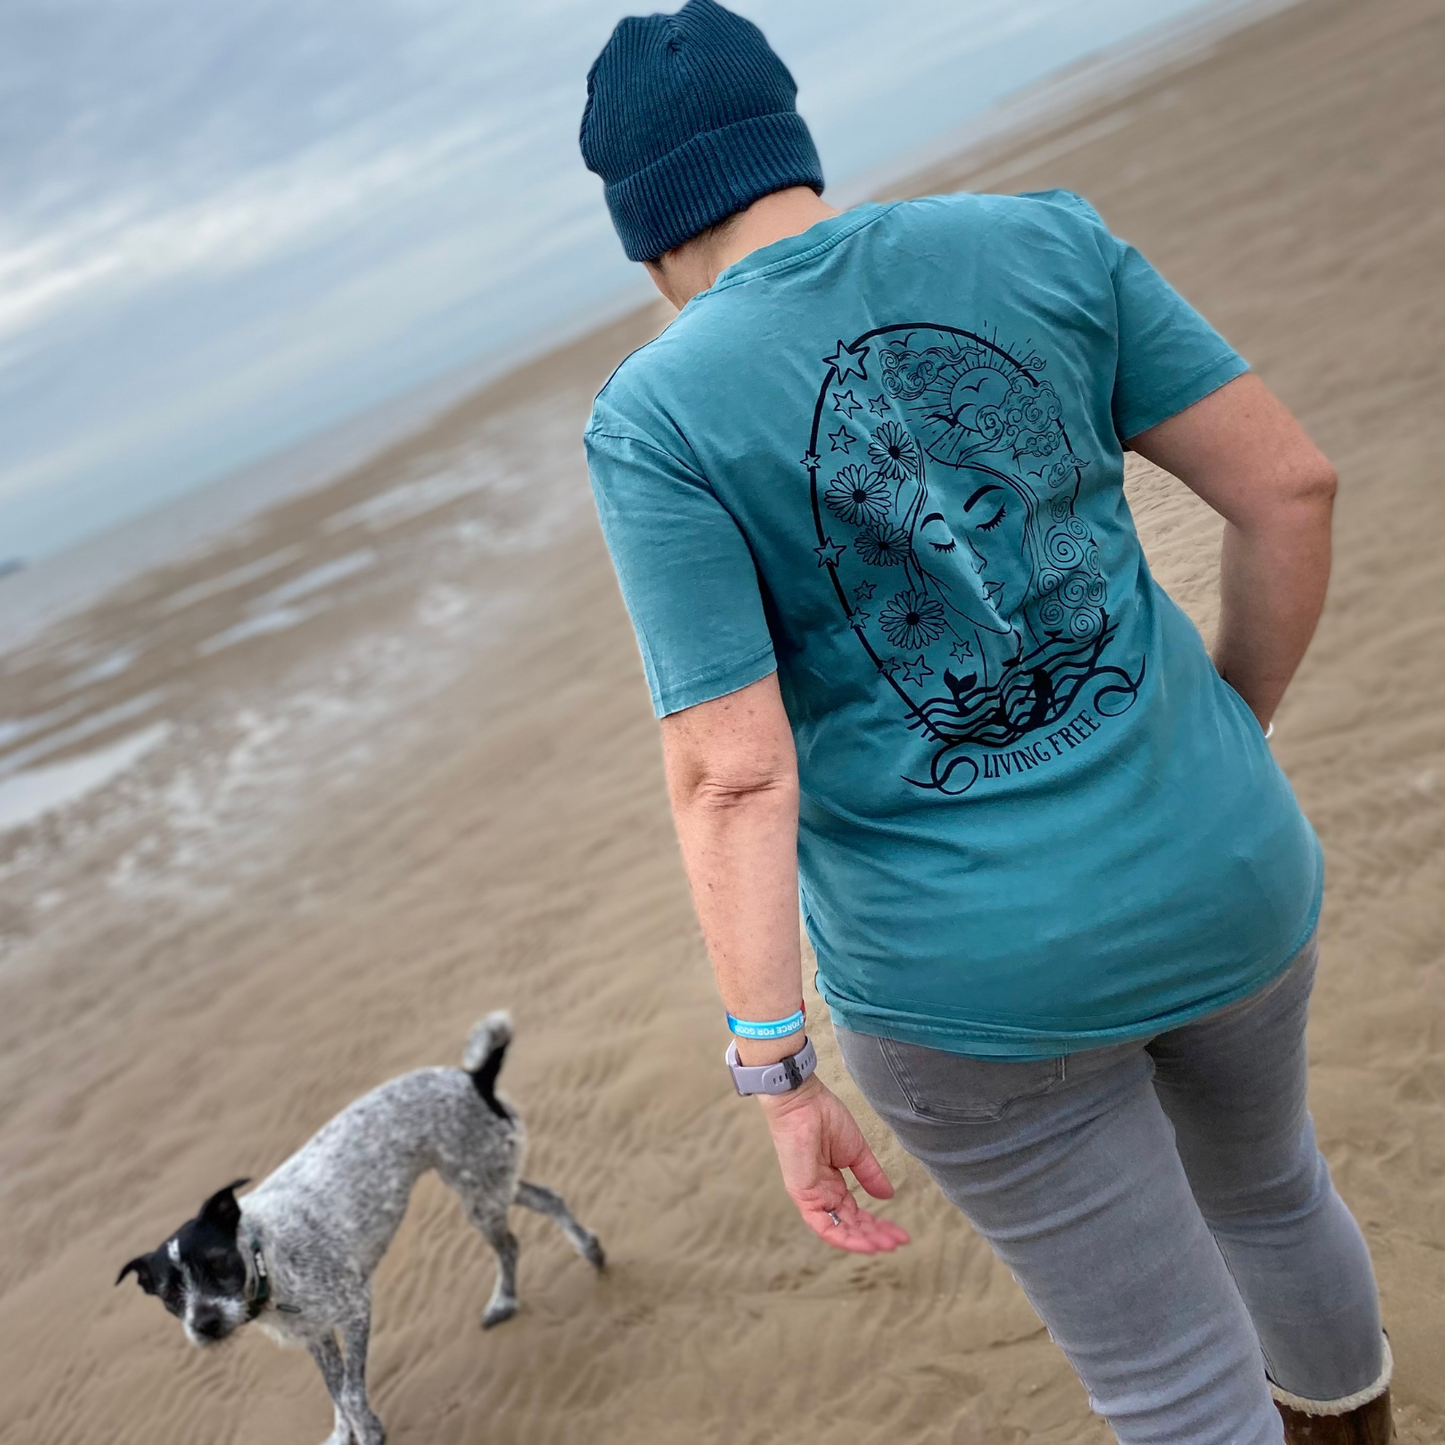 A woman in a t-shirt and hat, with a dog on the beach.